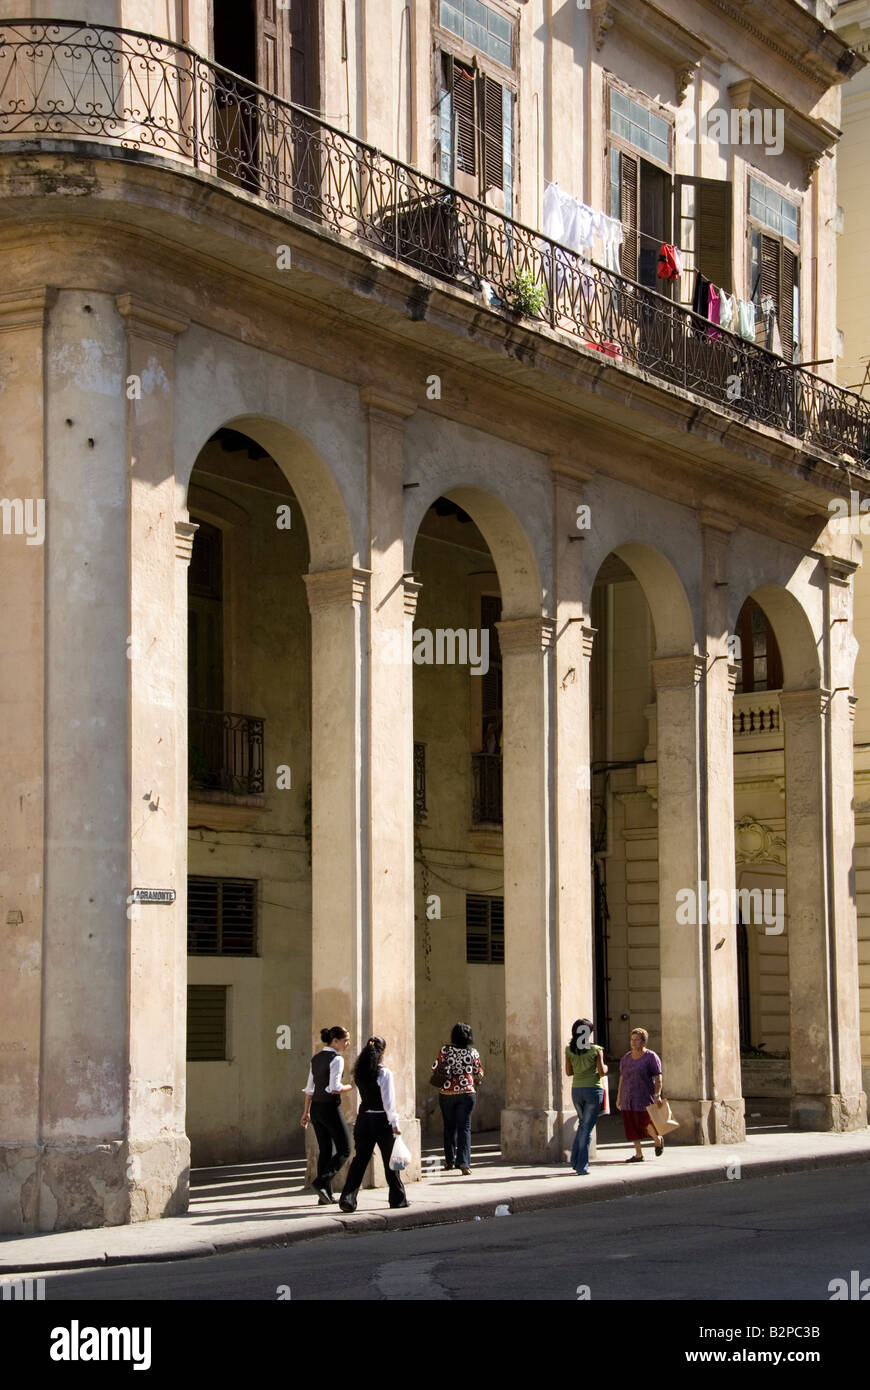 Scena di strada con la vecchia architettura coloniale a La Habana Vieja La Habana Cuba Foto Stock